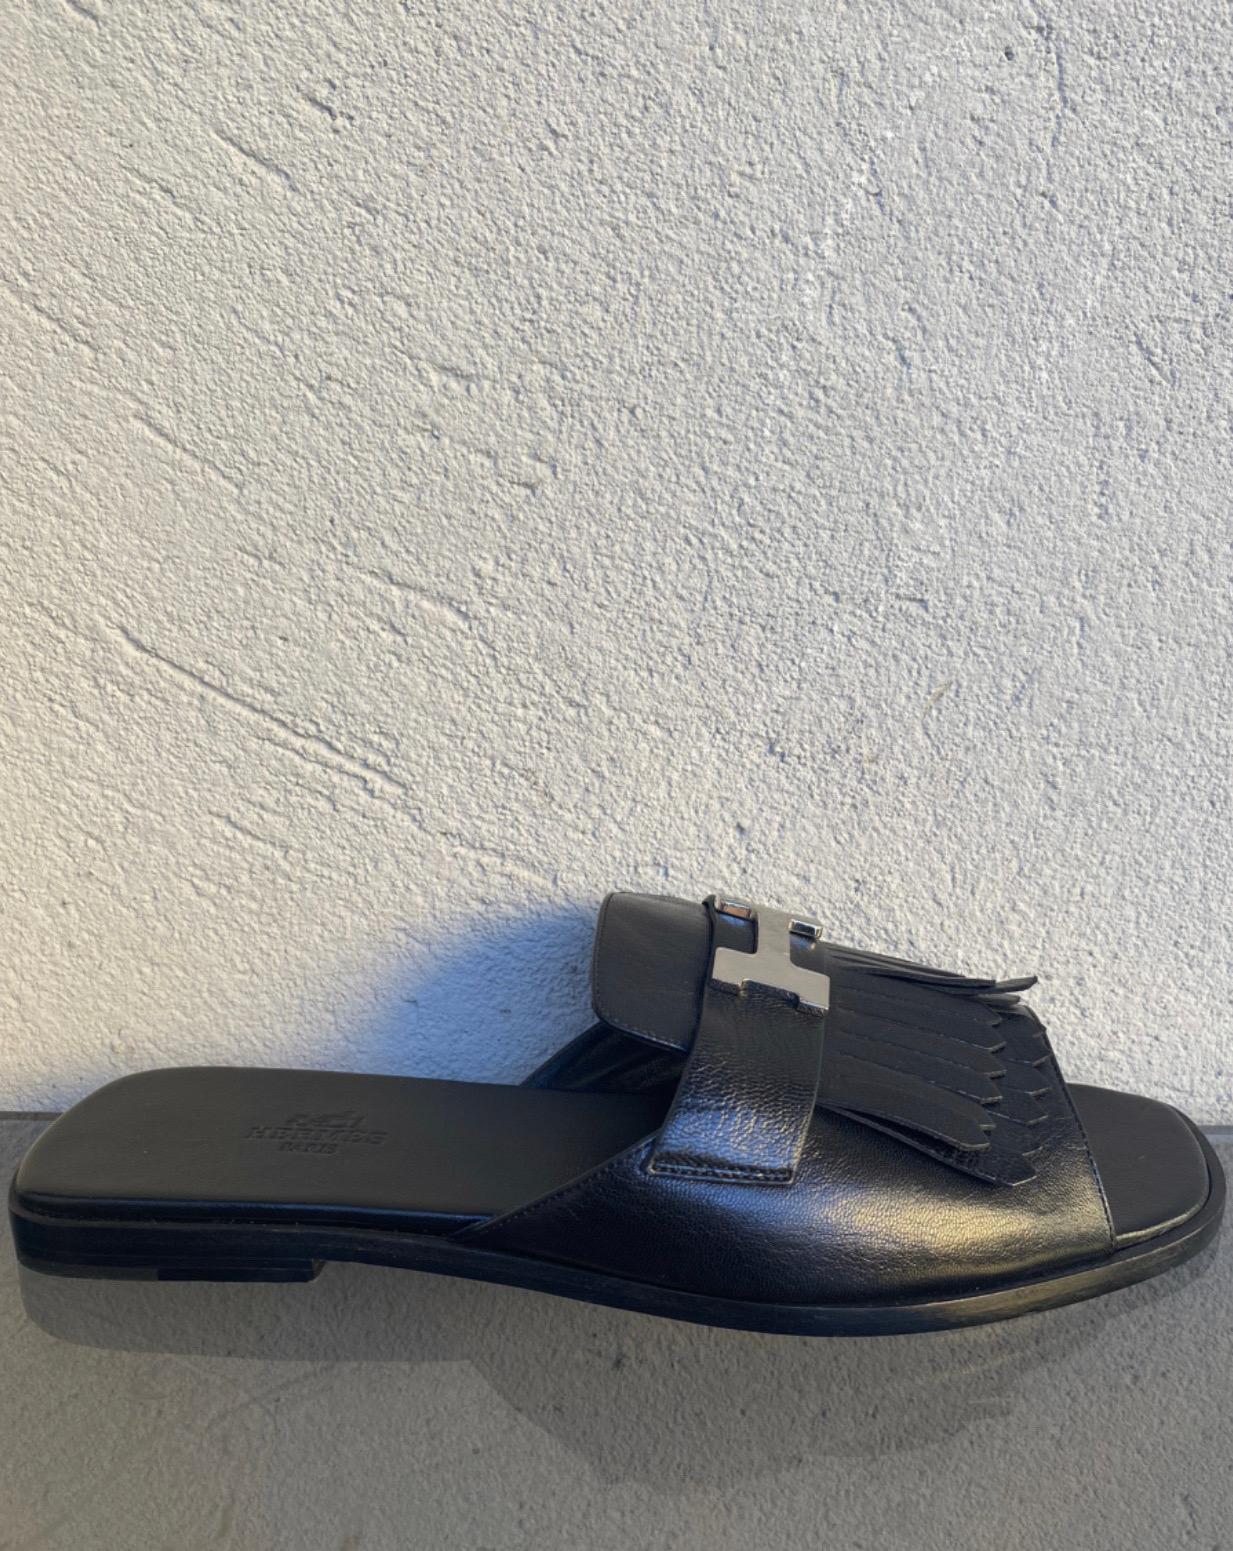 Black Hermes Auteuil black leather flat sandals